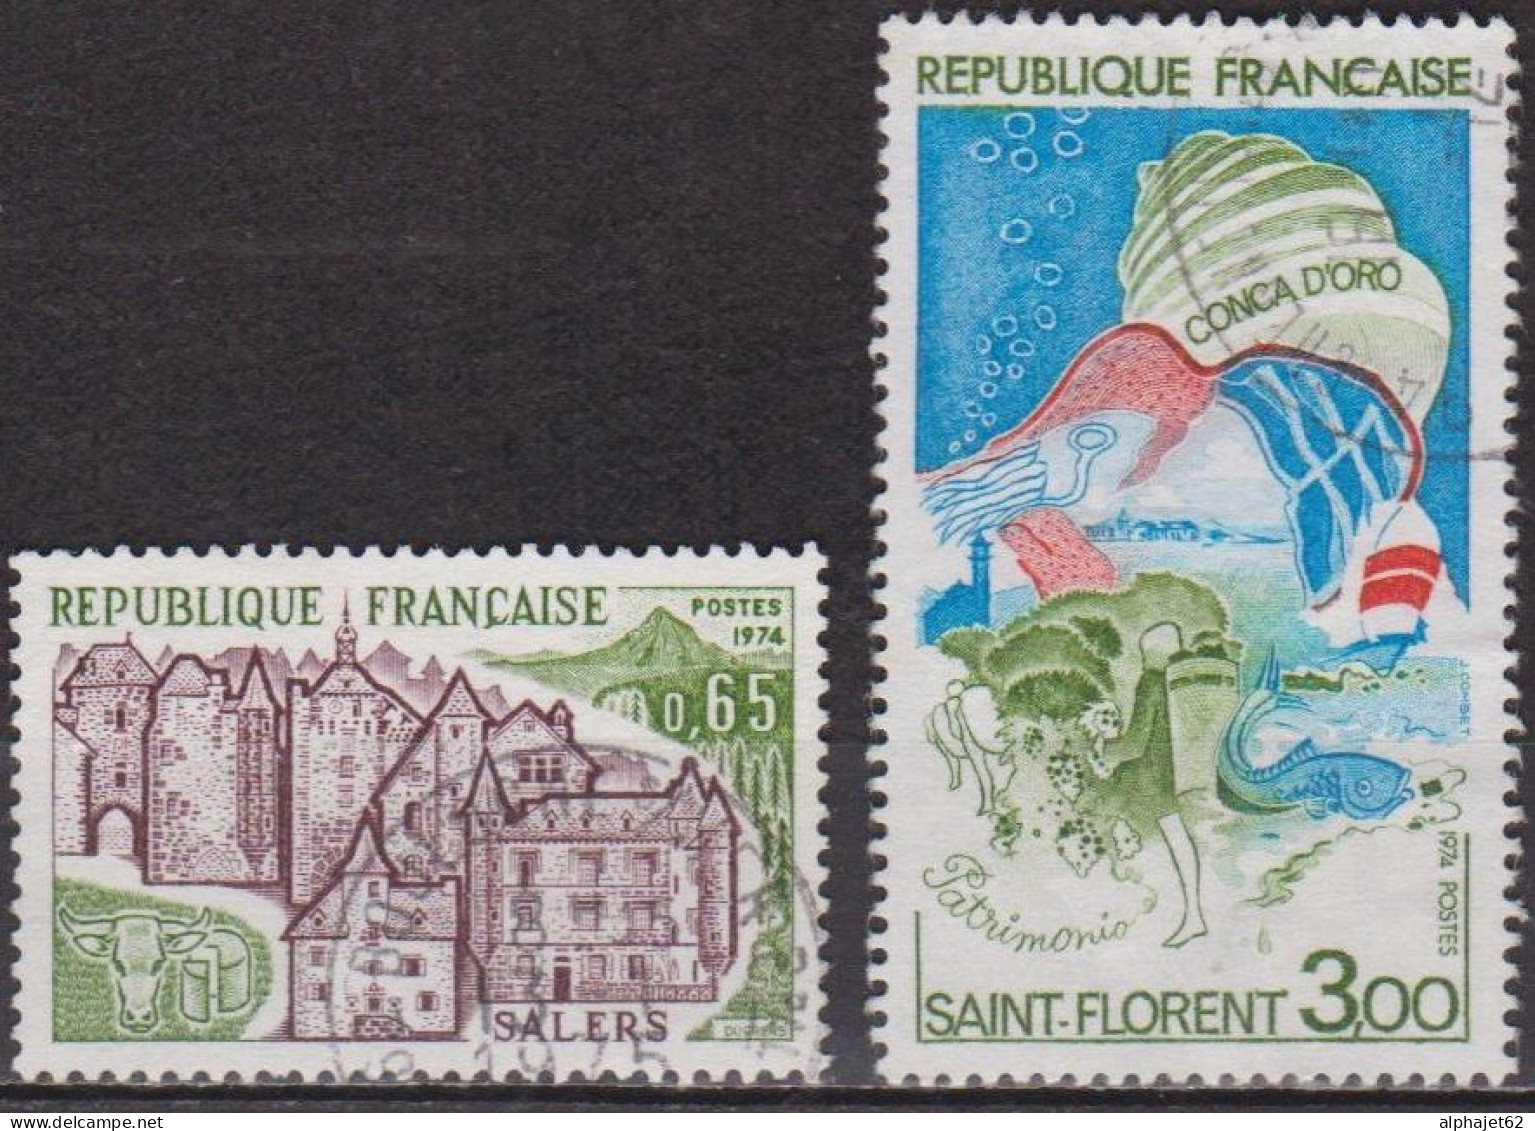 Série Touristique - FRANCE - Salers - Golfe De Saint Florent, Corse - N° 1793-1794 - 1974 - Used Stamps